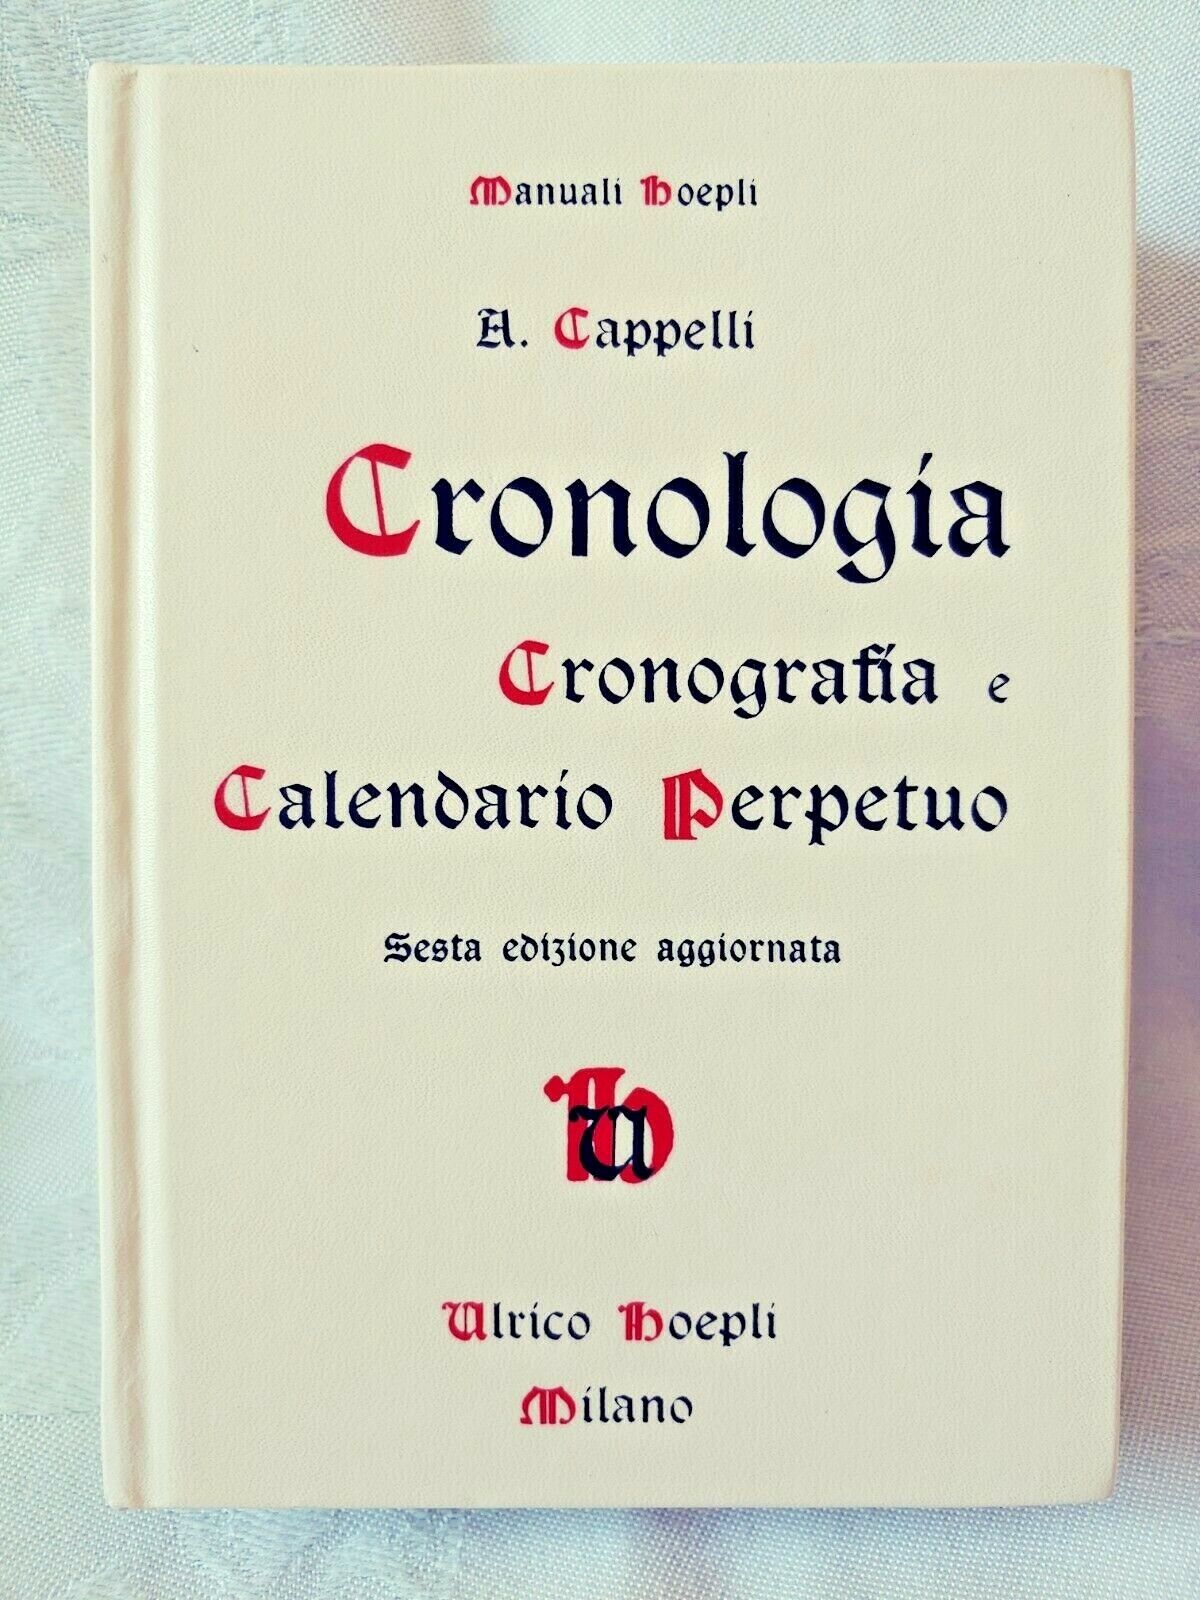 Cronologia Cronografia e Calendario Perpetuo Sesta Ed. Capellii 1988  #8820316870